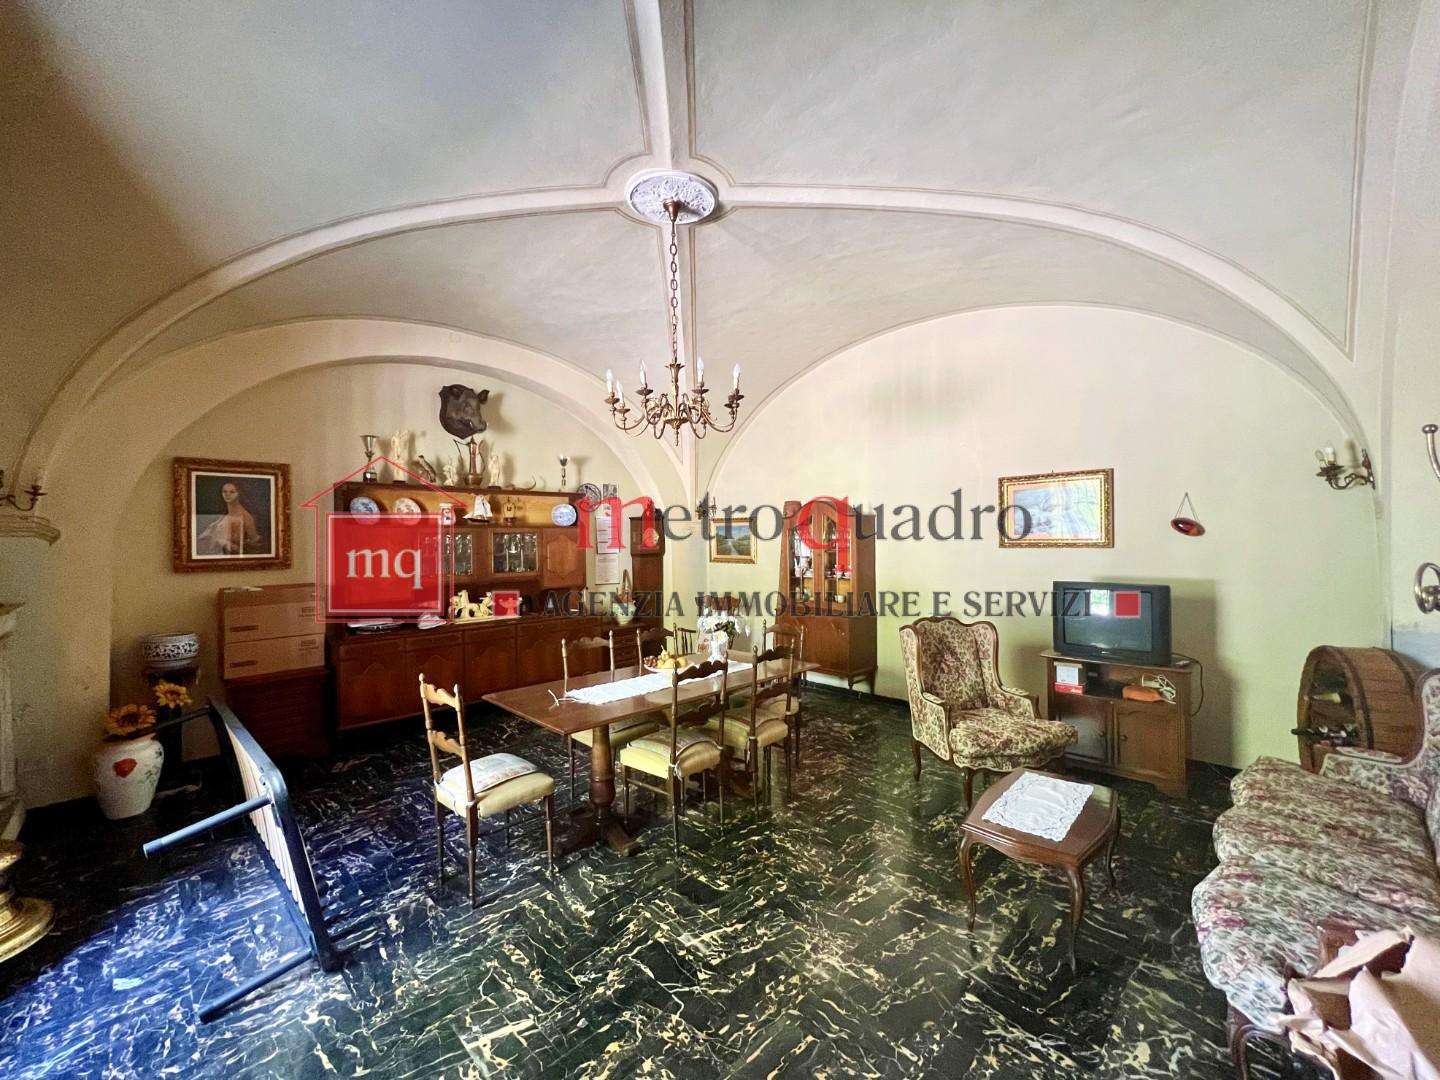 Palazzo - Stabile in Vendita a San Giuliano Terme Pontasserchio PI,